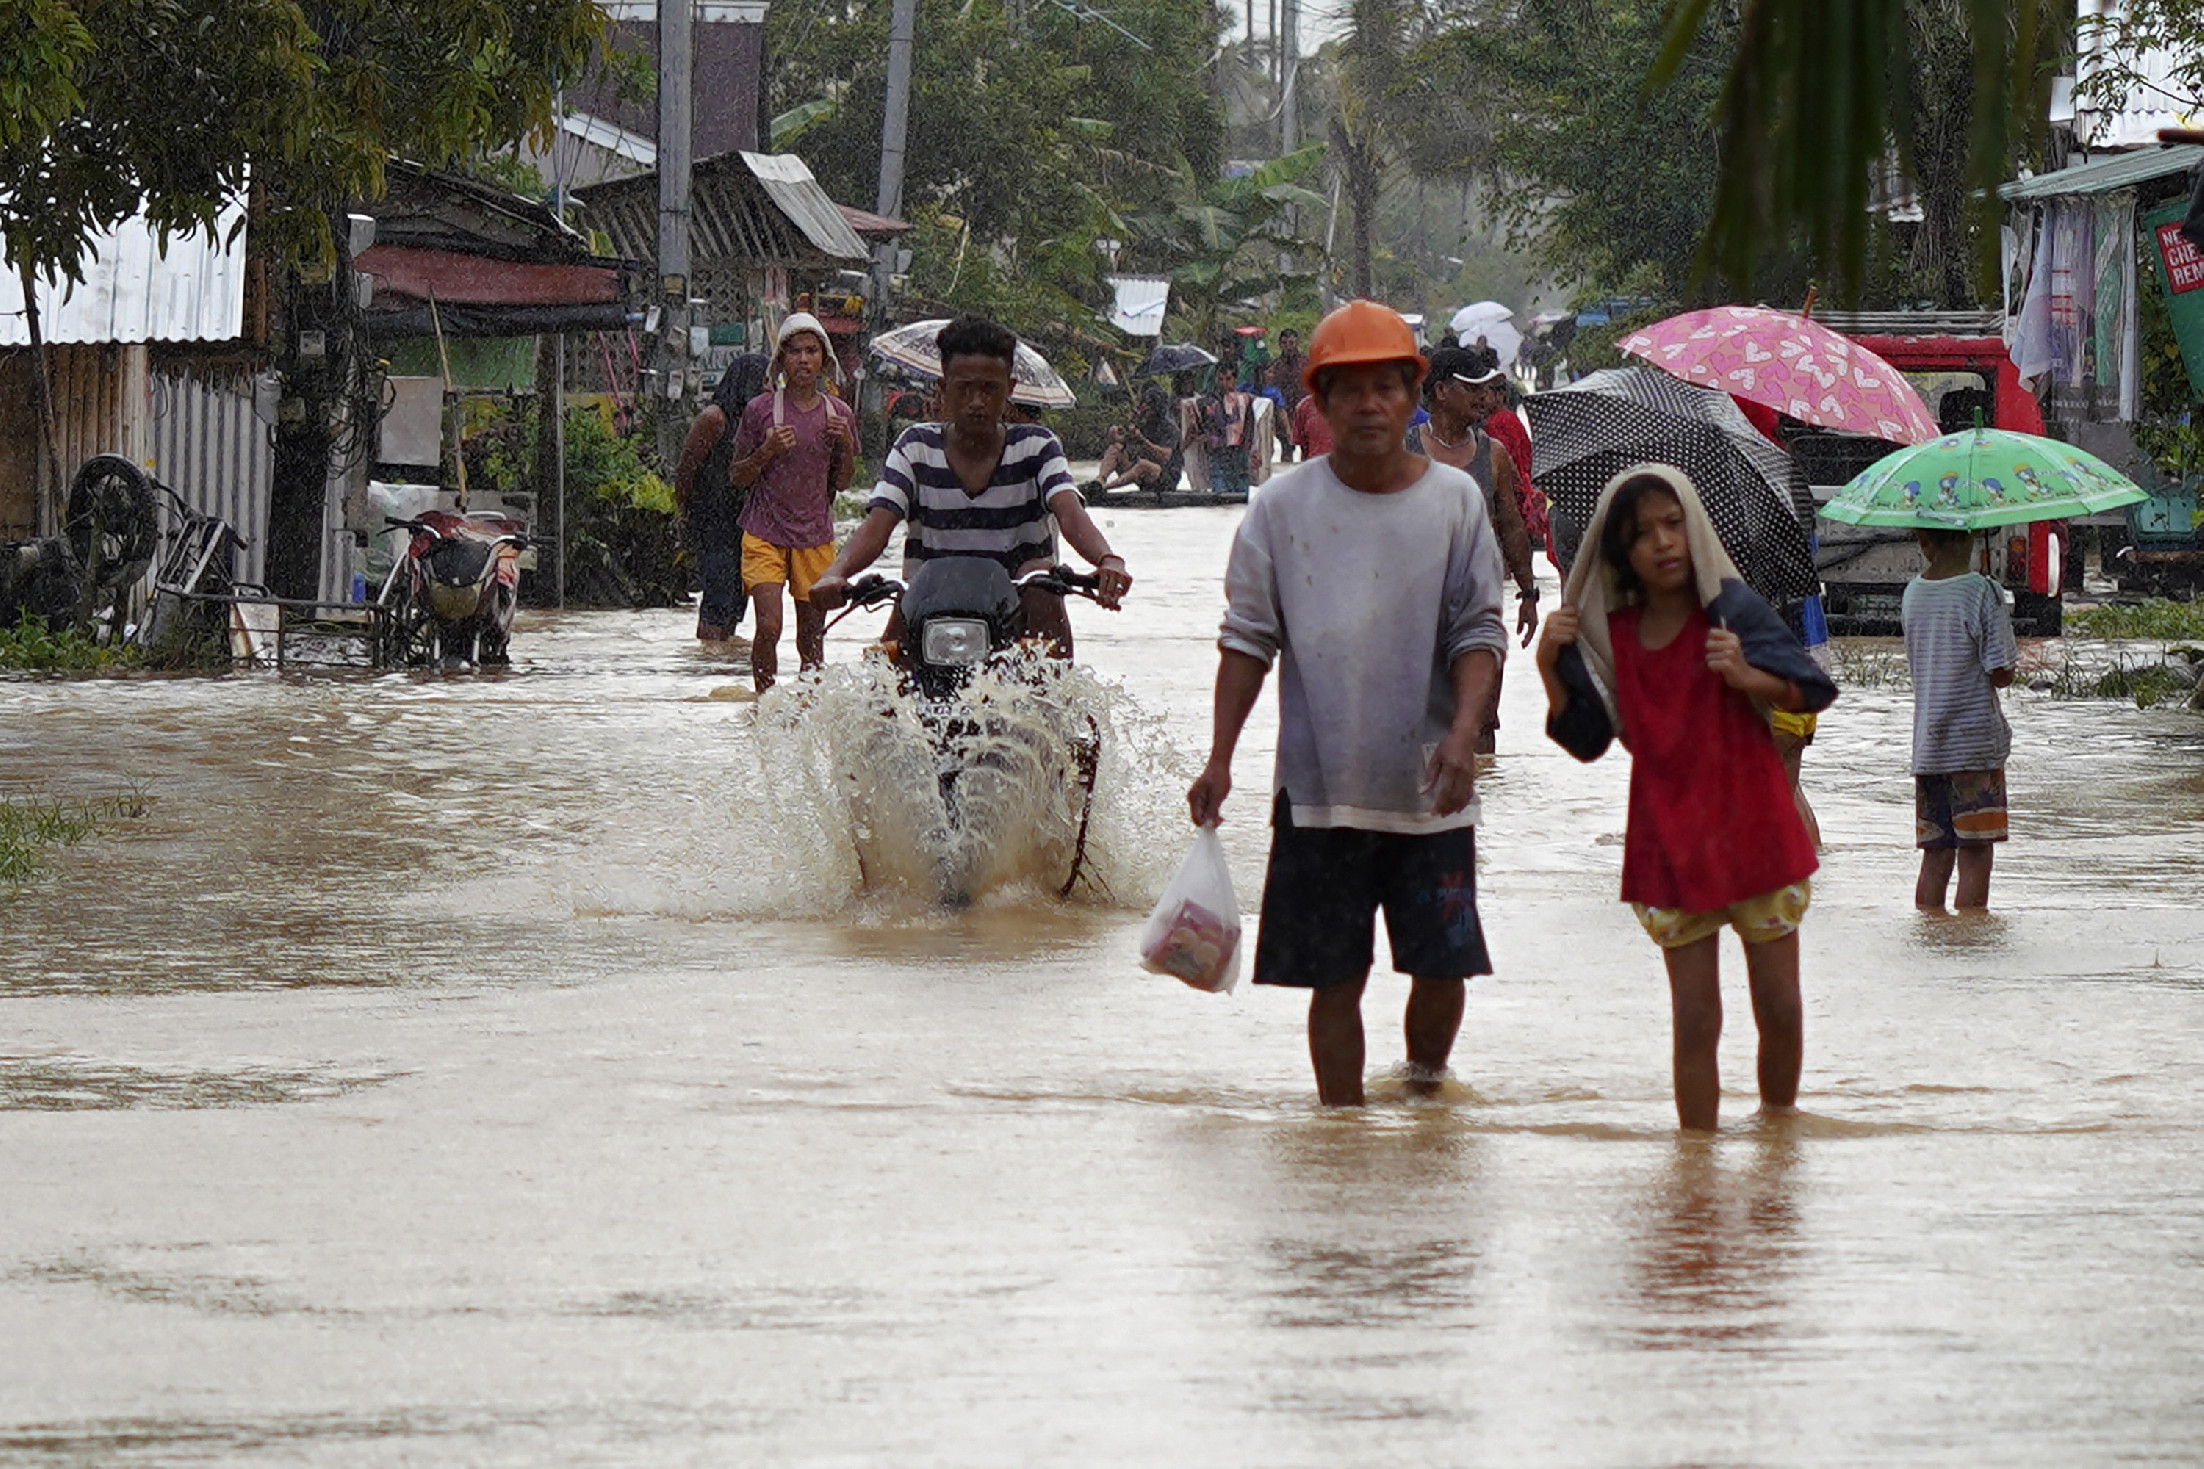 Sok a halálos áldozata a trópusi vihar okozta árvizeknek és földcsuszamlásoknak a Fülöp-szigeteken